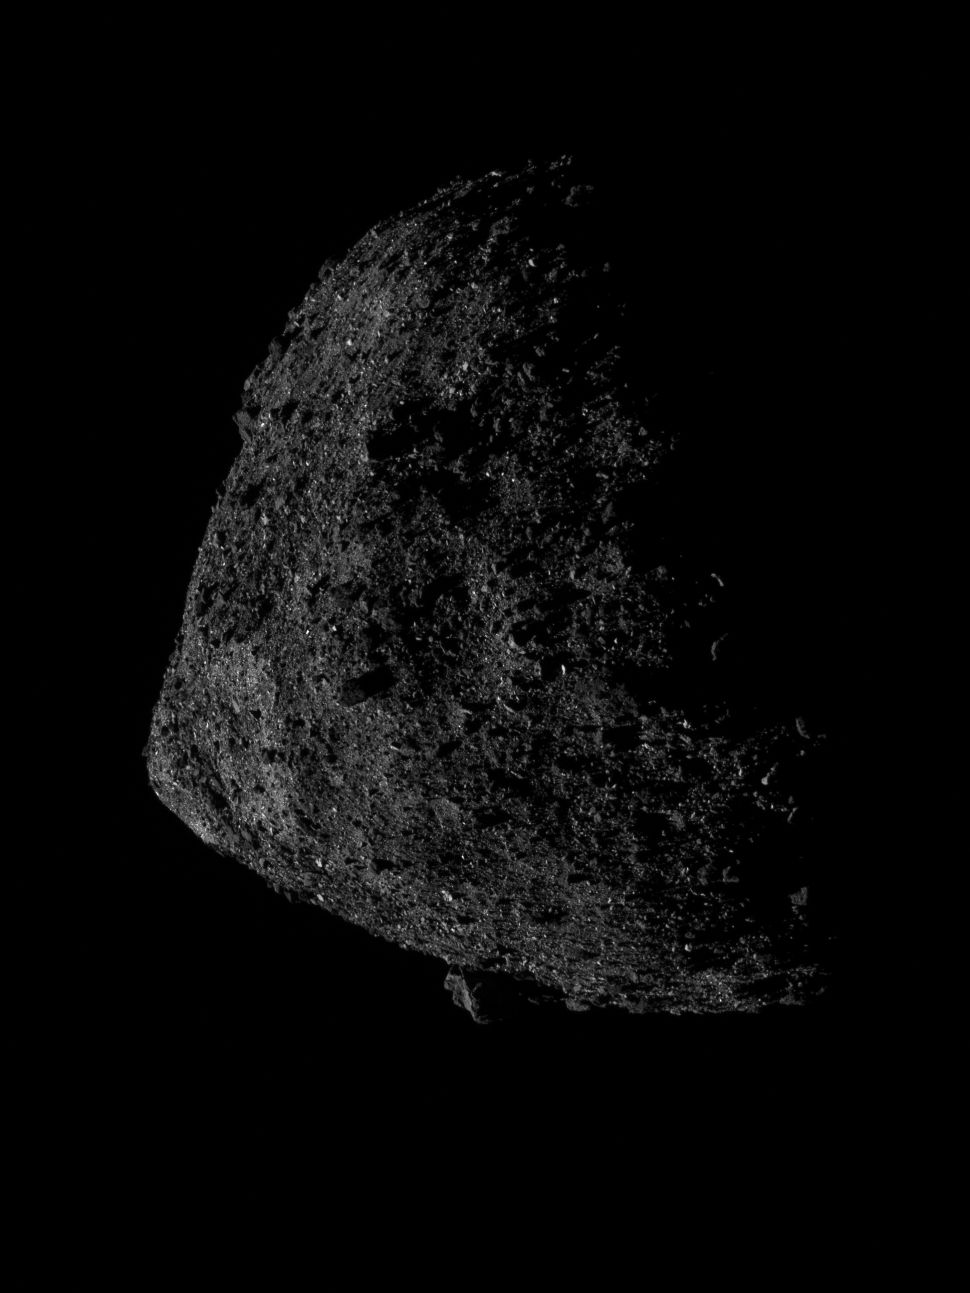 Esta es la mejor vista del  asteroide Bennu que se tiene hasta la fecha